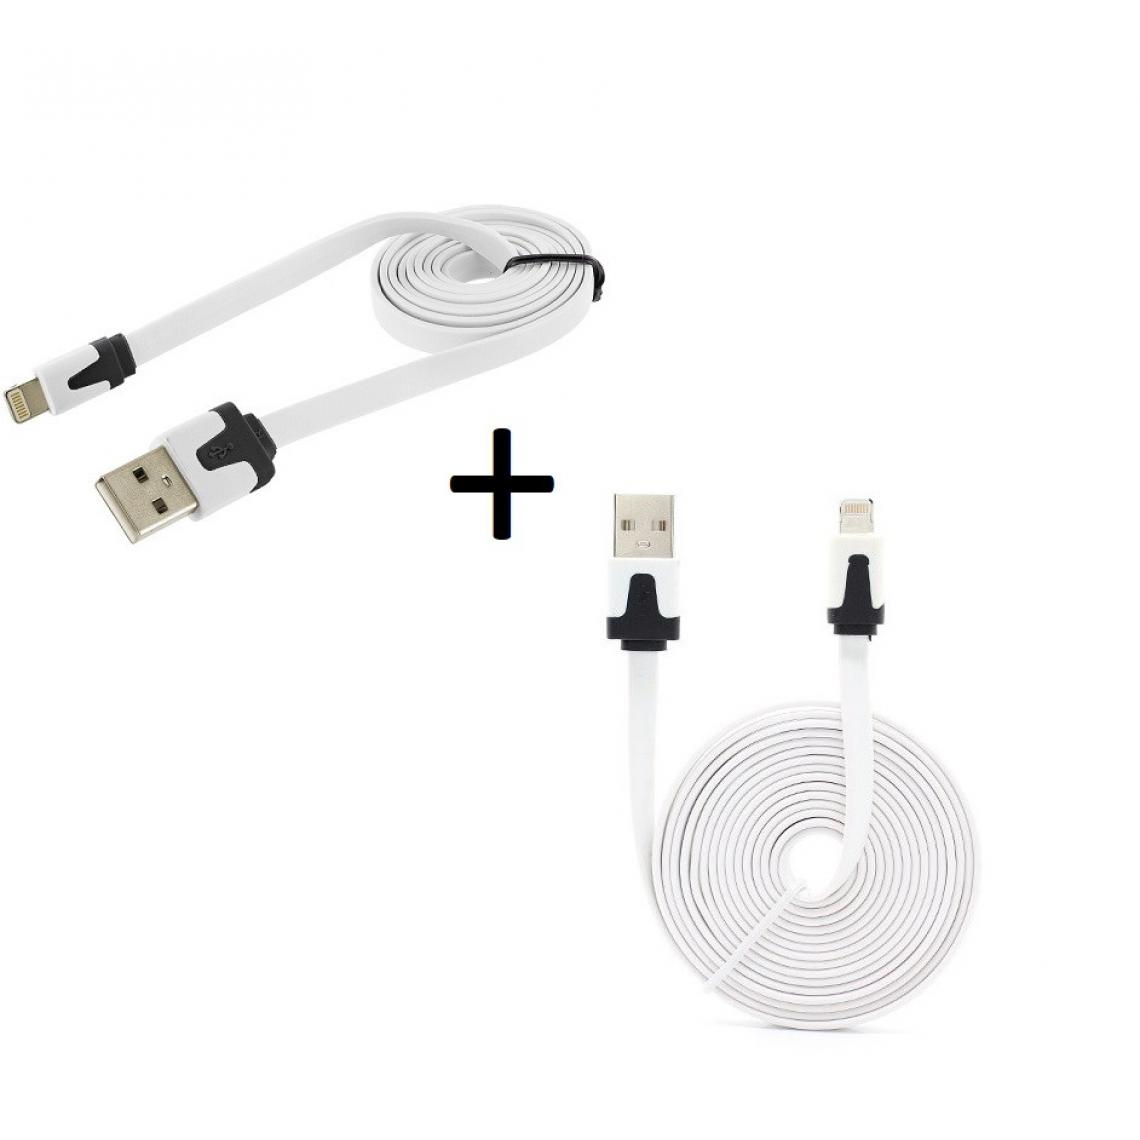 Shot - Pack Chargeur pour IPHONE 11 Lightning (Cable Noodle 3m + Cable Noodle 1m) USB APPLE IOS (BLANC) - Chargeur secteur téléphone